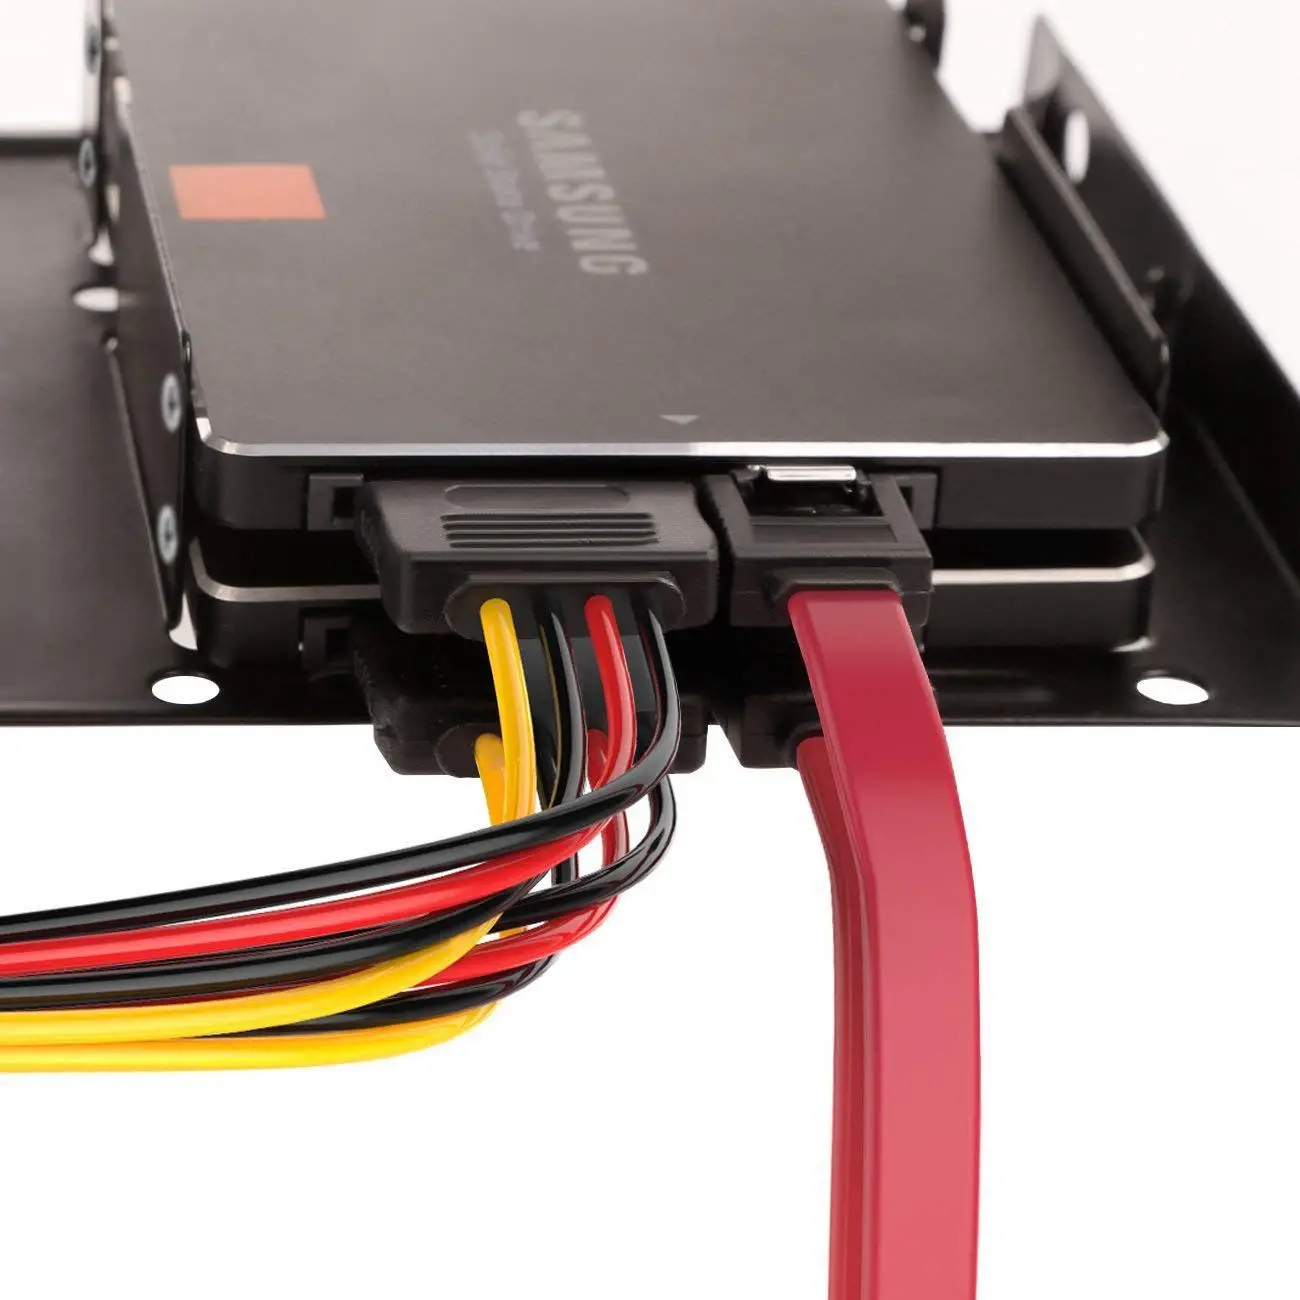 SSD/жесткого диска SATA III соединительные кабели(1x4 Pin к двойному(15 контактов SATA Мощность разветвитель кабеля, 1 х(15 контактов двойной 15 Pin SATA Po